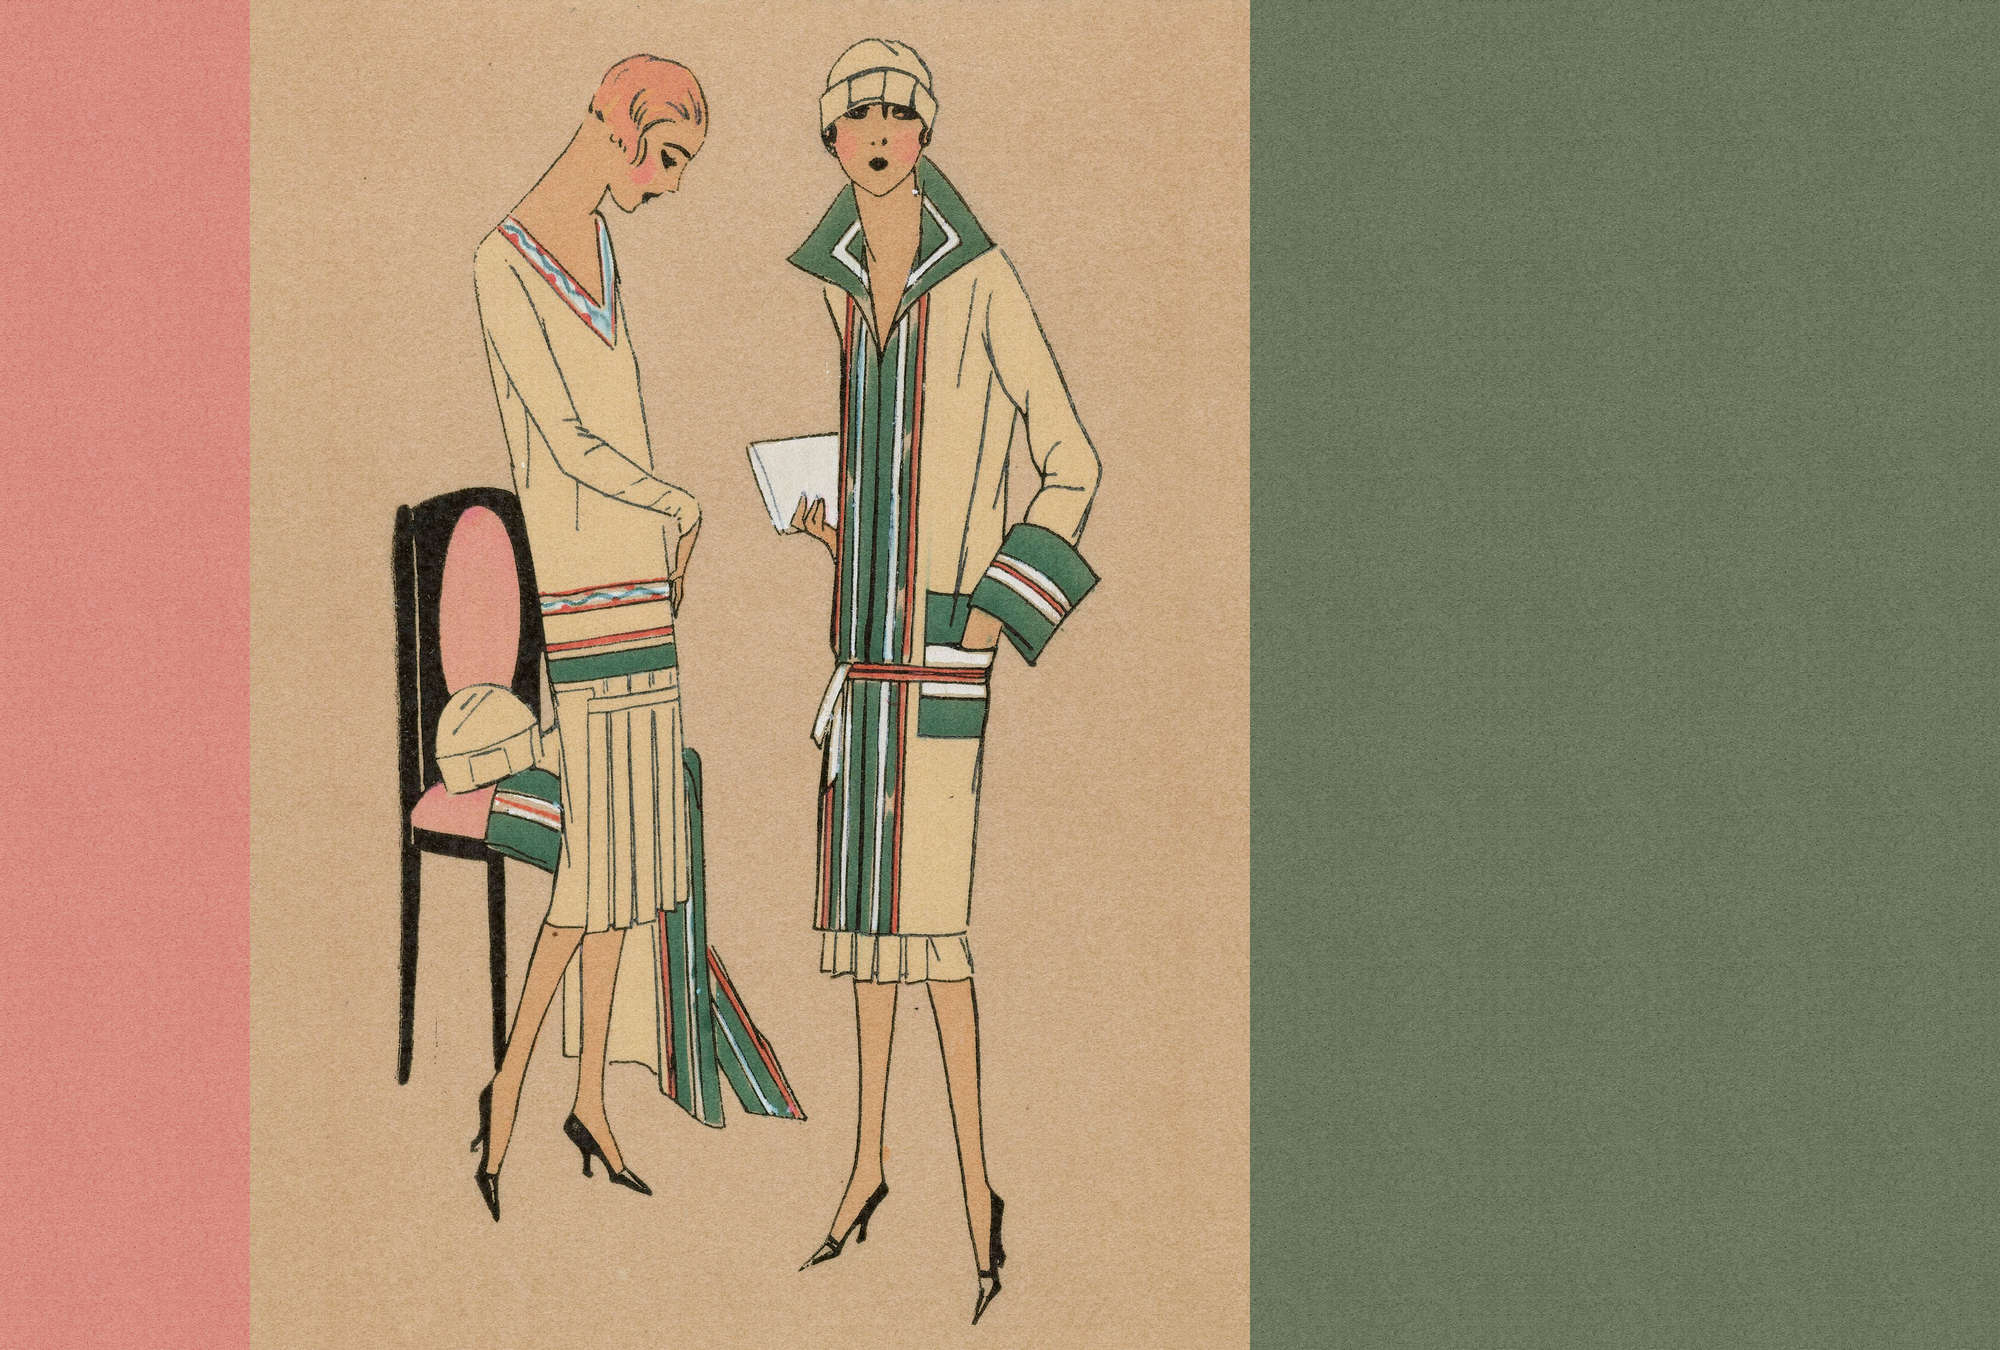             Parisienne 1 - papel pintado fotográfico de ropa de estilo Twentiers
        